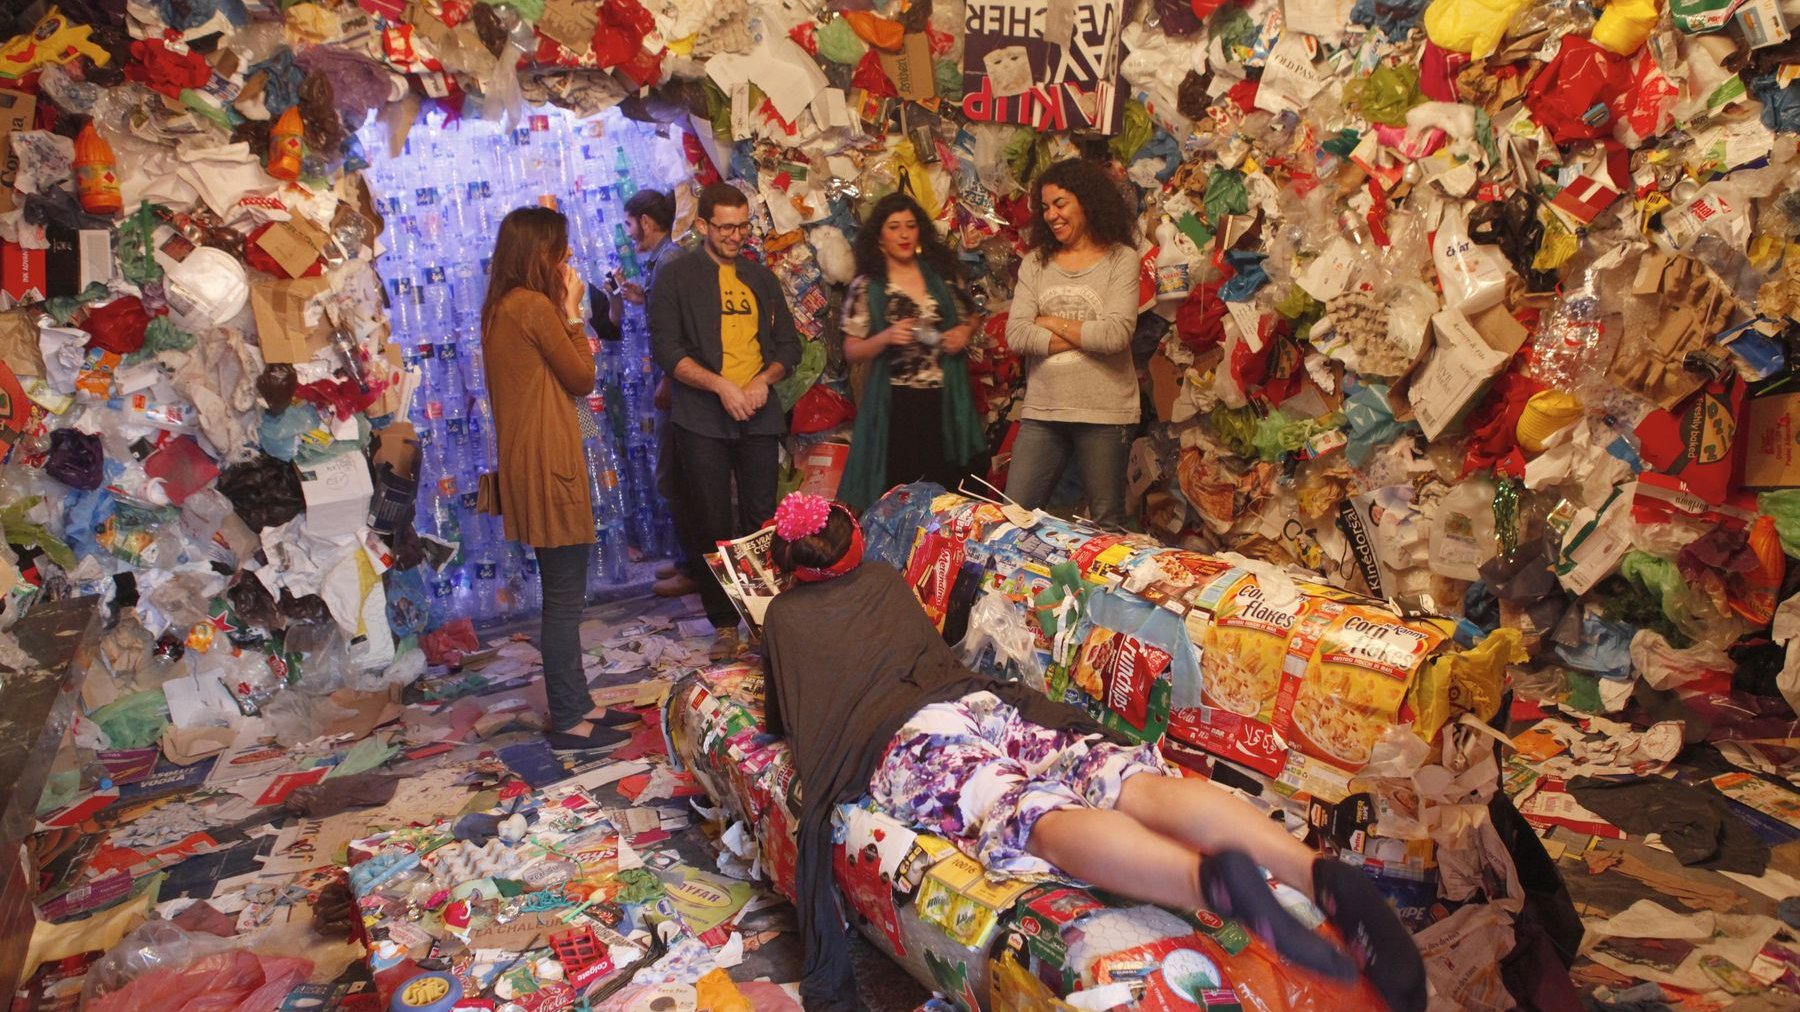 Après avoir traversé un couloir de rideaux de bouteilles usagées, les visiteurs débarquent dans une pièce dont les murs sont recouverts de déchets et de vieux objets. L'actrice Fatim El Aychi, installée dans un fauteuil, semble adorer.
